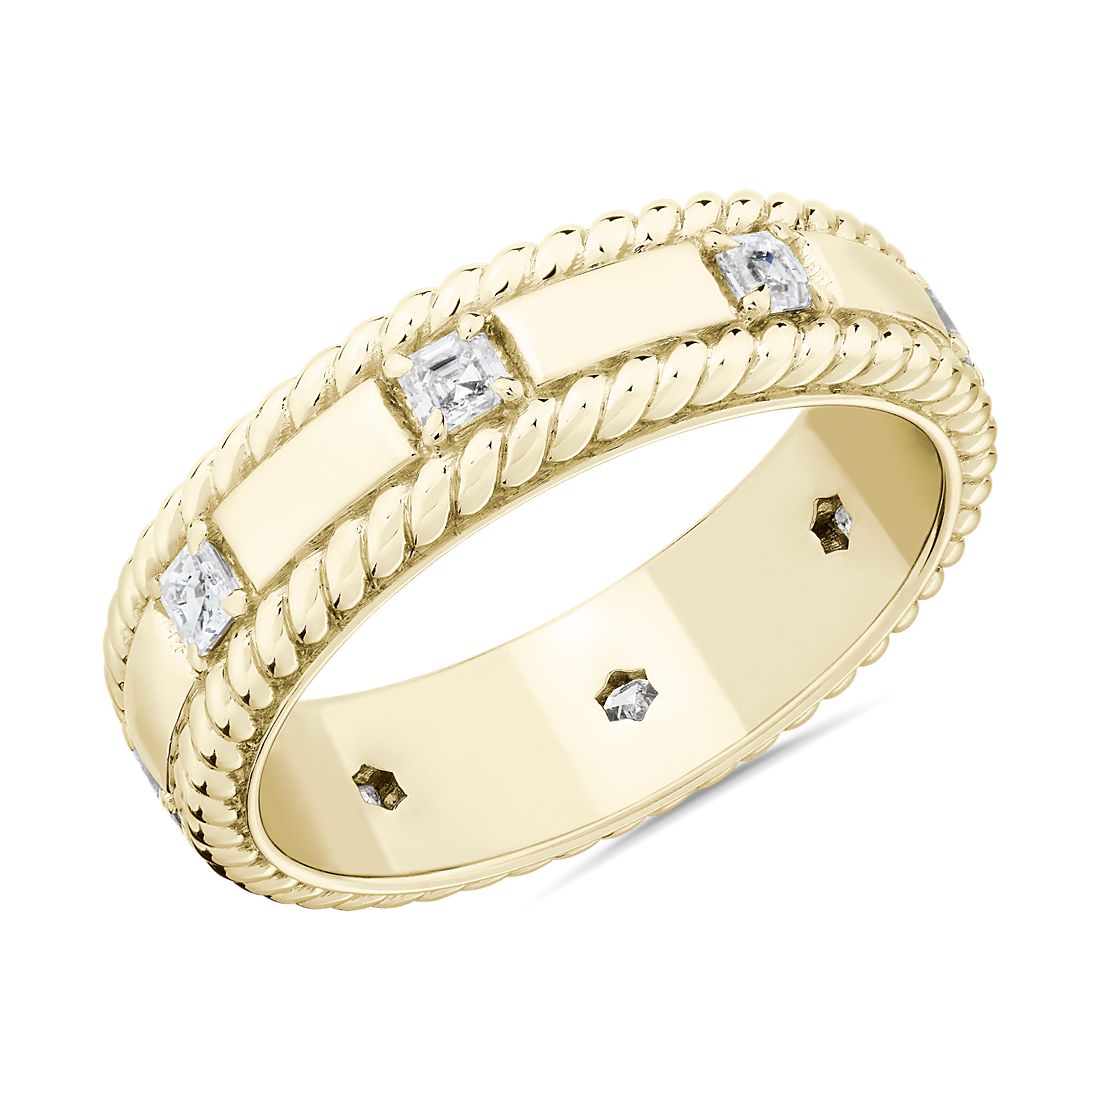 BV Grandeur Asscher Diamond Wedding Ring in 18k Yellow Gold (6 mm, 3/8 ct. tw.)